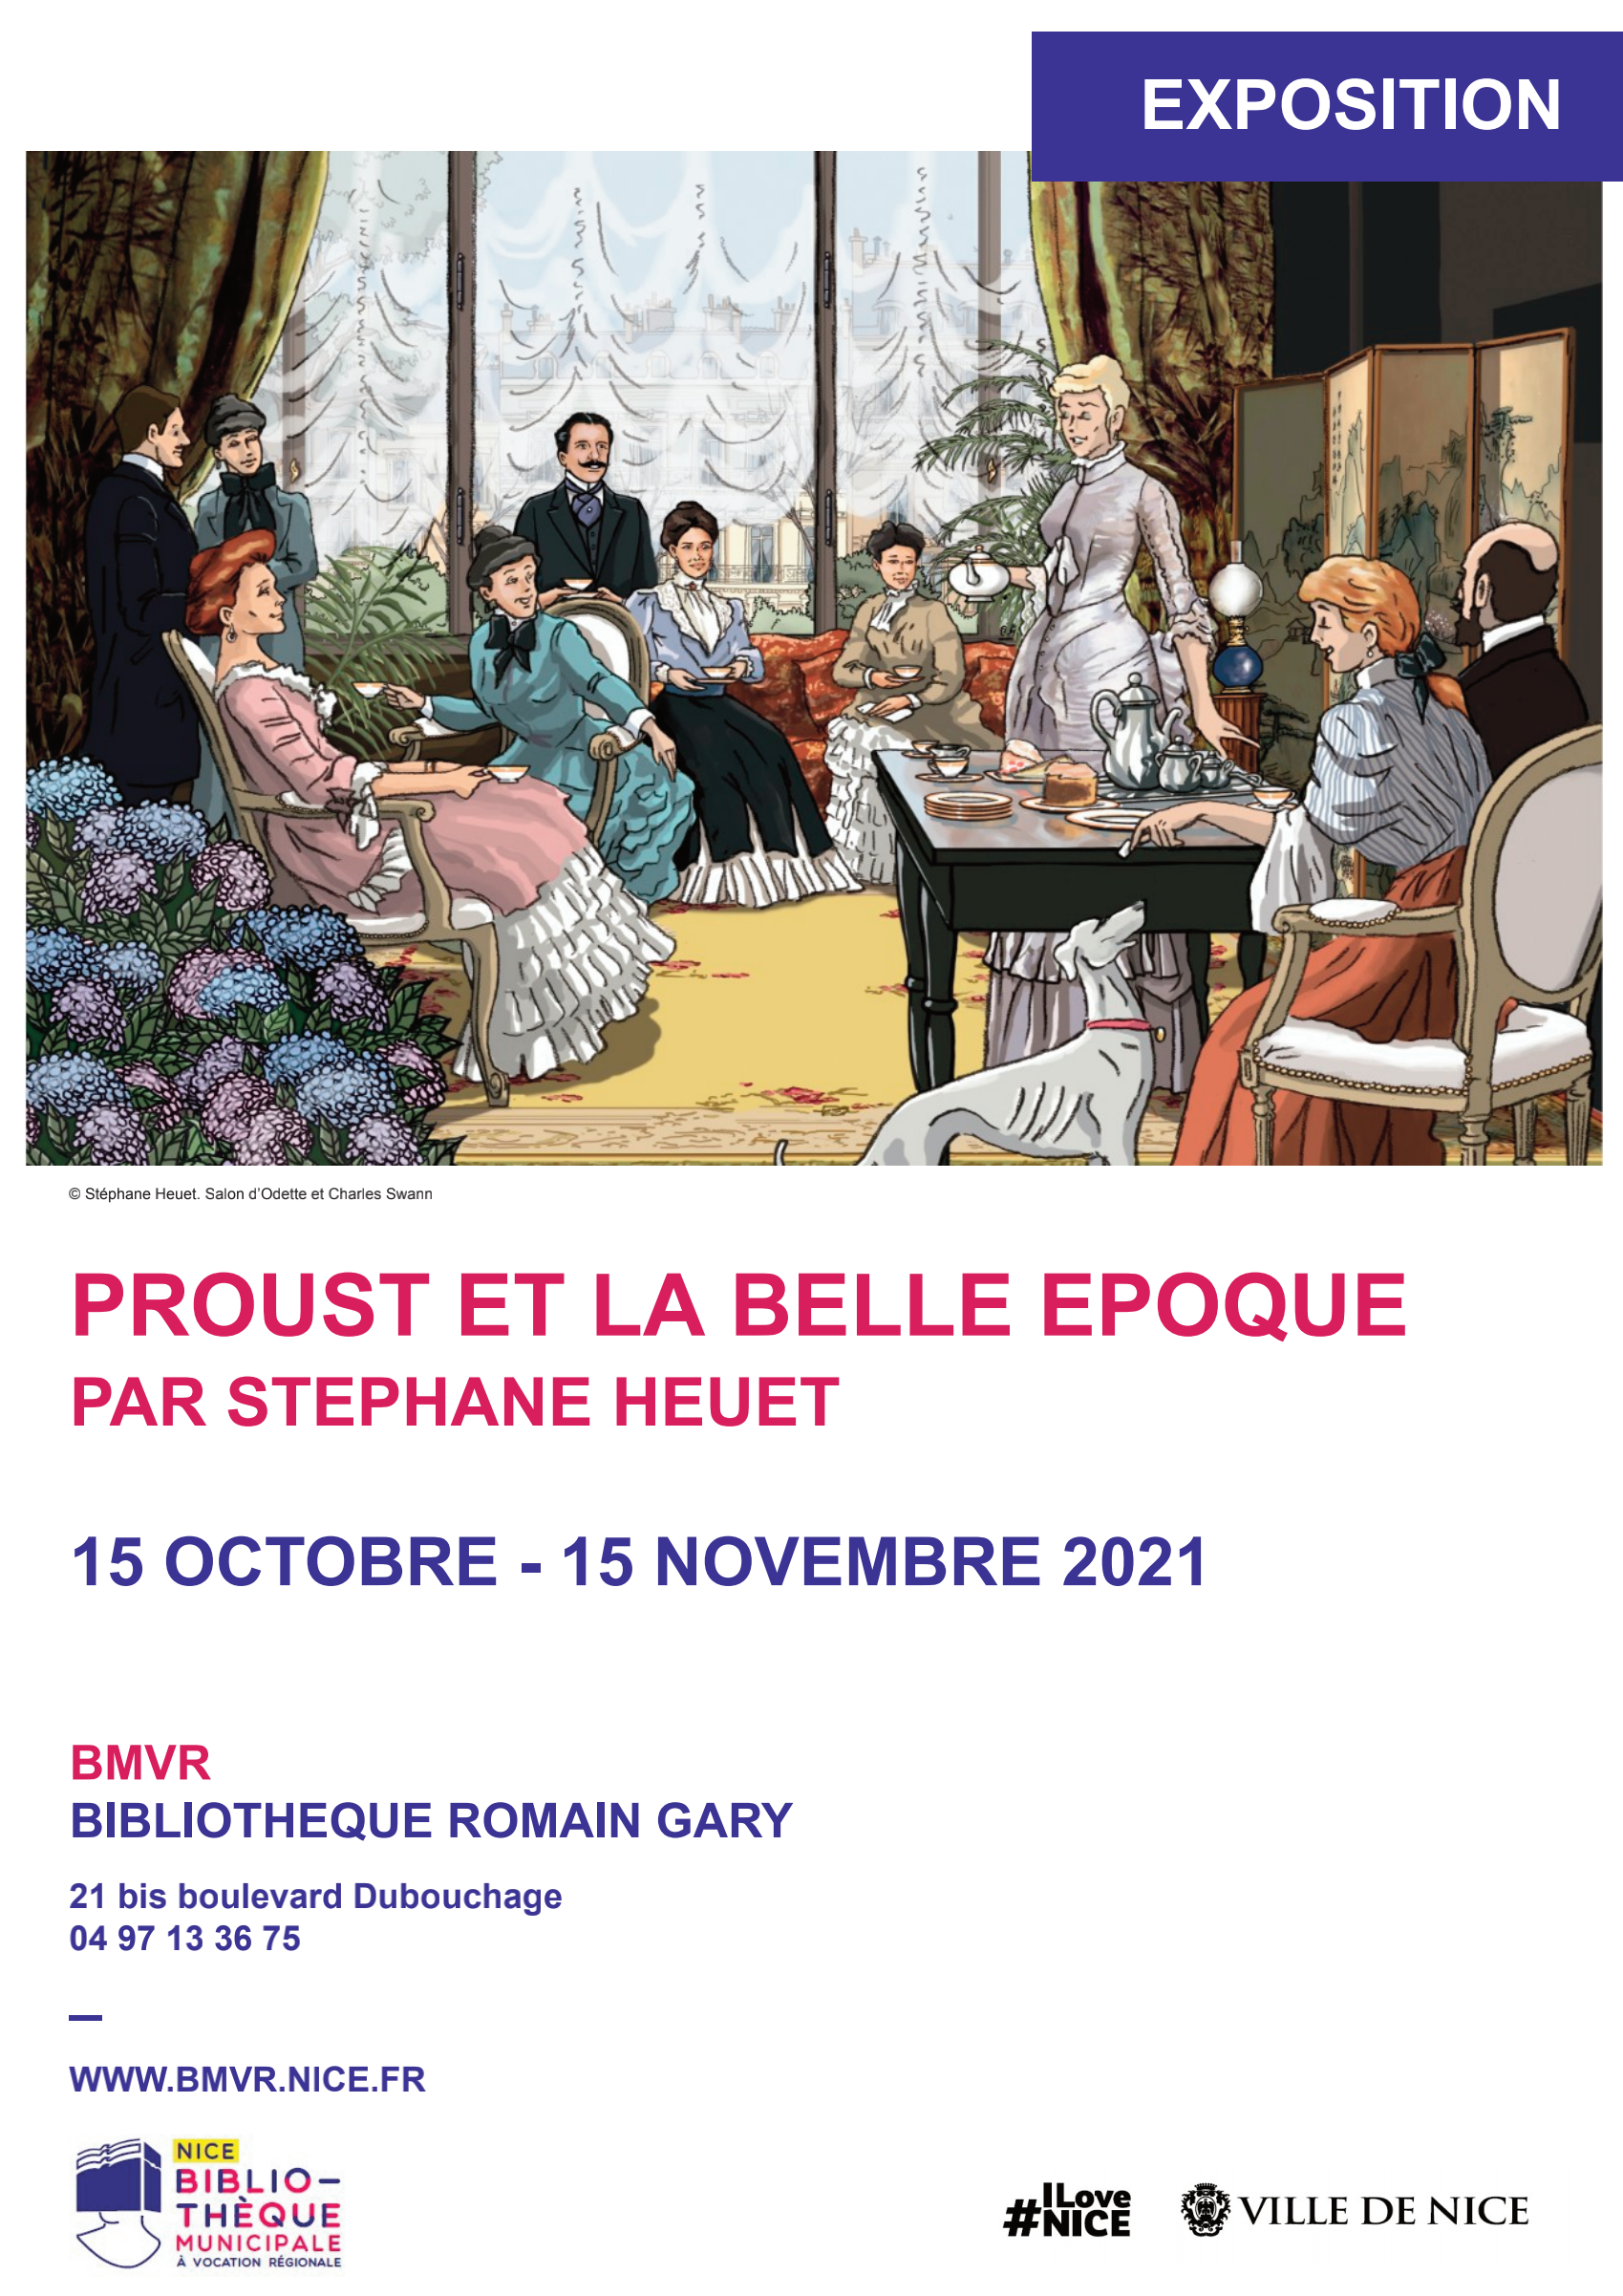 Stéphane Heuet - Exposition à Nice "Proust et la Belle époque"  - 15 octobre au 15 novembre 2021